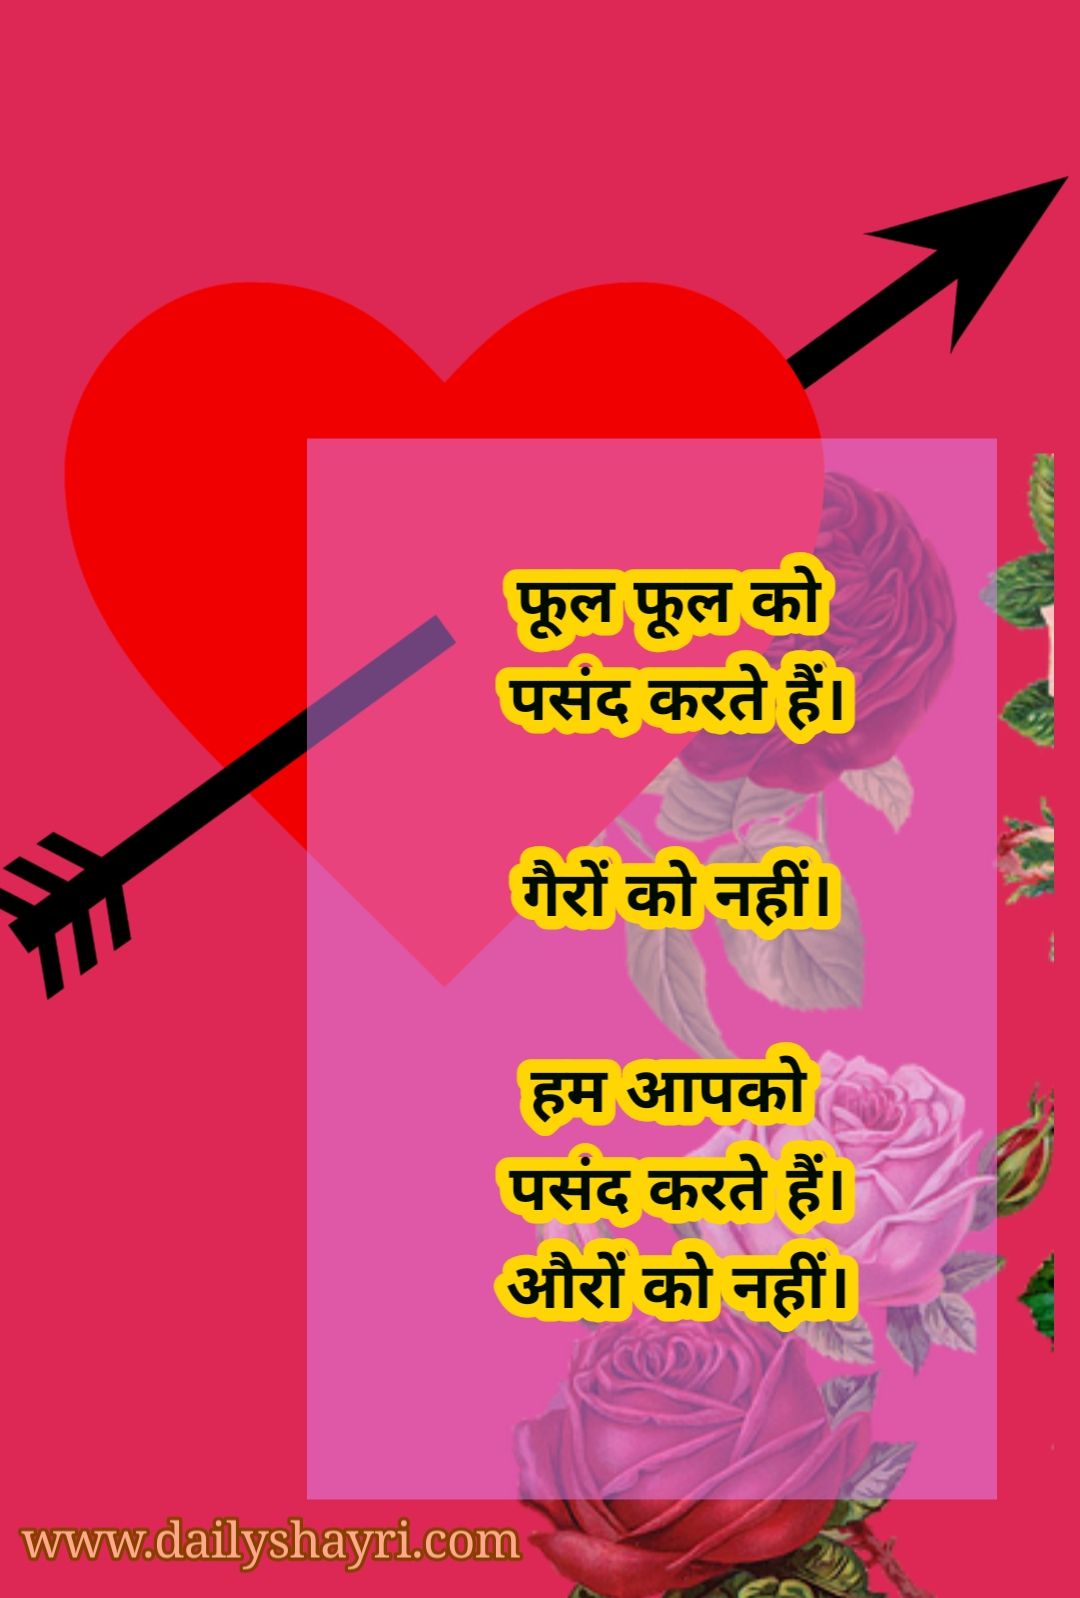 Hindi Romantic Shayari poetry images – Hindi Shayari Love Shayari Love Quotes Hd Images